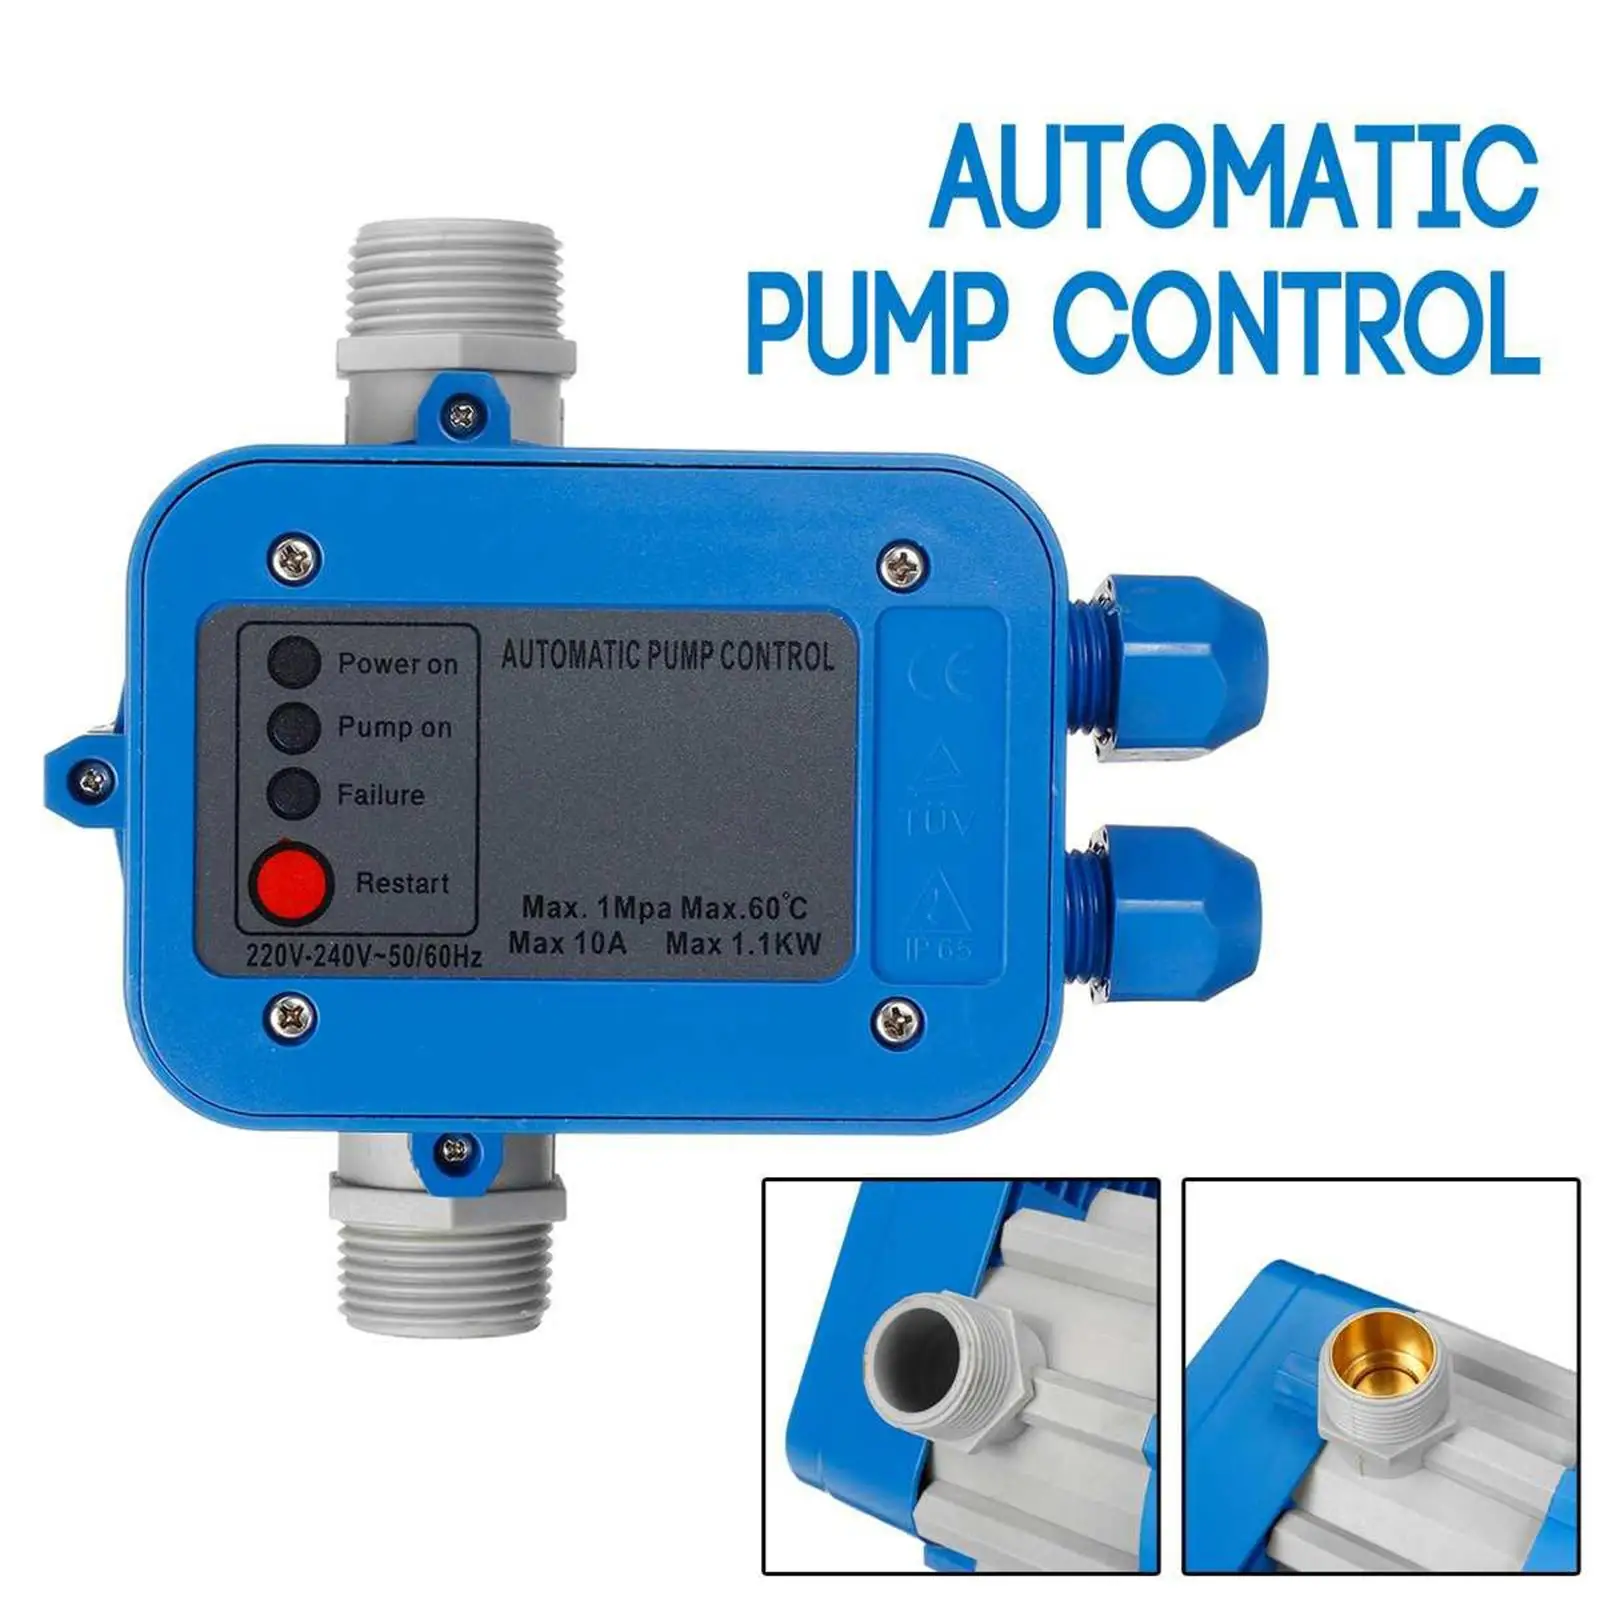 

Автоматический контроллер давления водяного насоса, прочный водонепроницаемый переключатель автоматического управления, аксессуары для насосов, 1 шт.